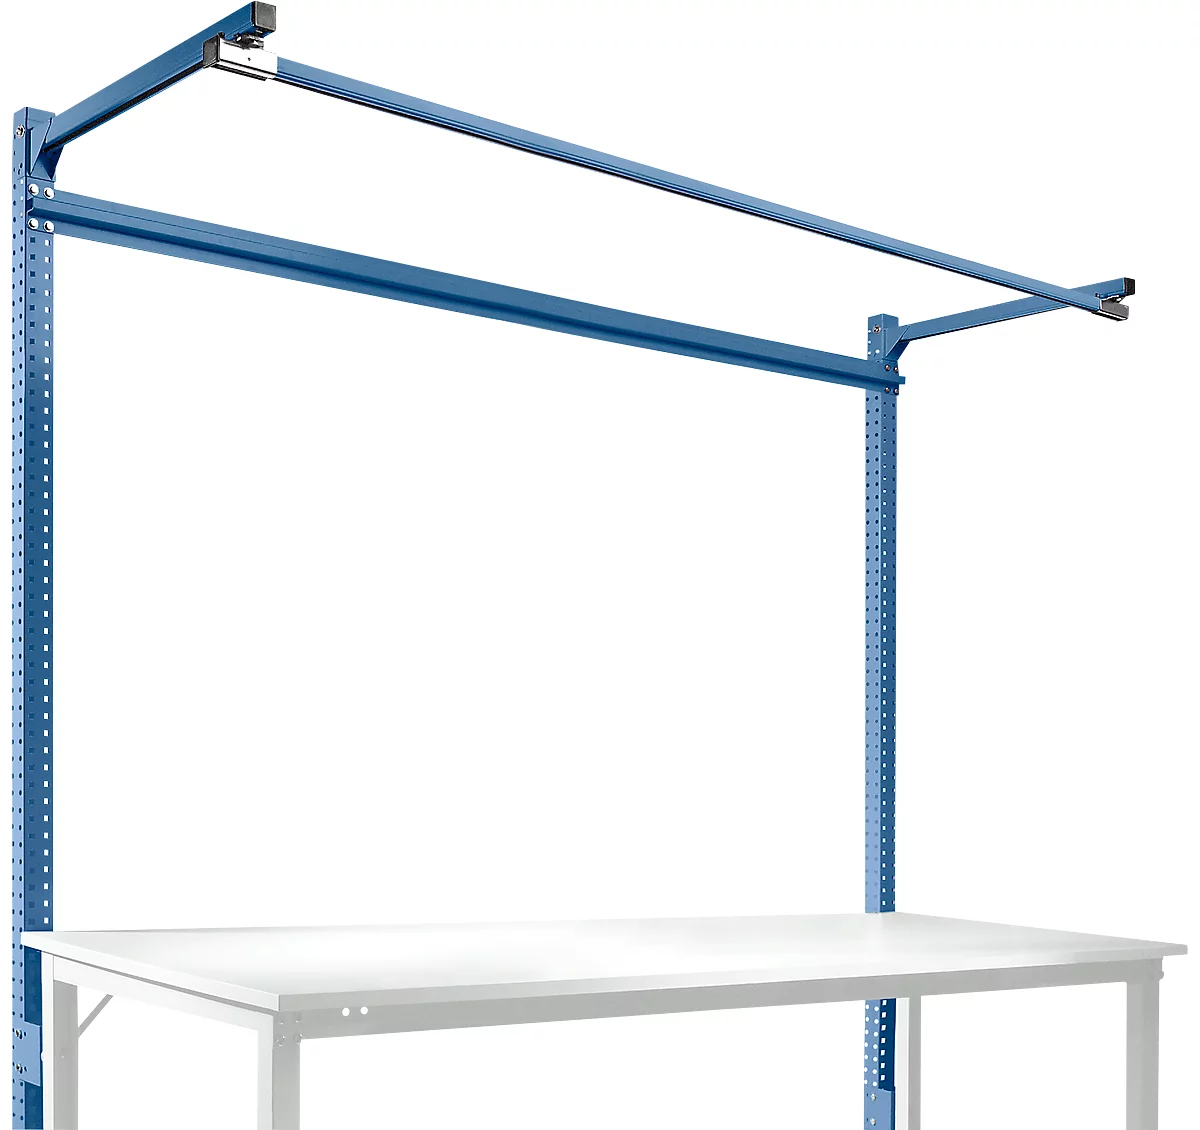 Estructura pórtica adicional con brazo saliente, Mesa básica STANDARD mesa de trabajo/banco de trabajo UNIVERSAL/PROFI, 2000 mm, azul brillante